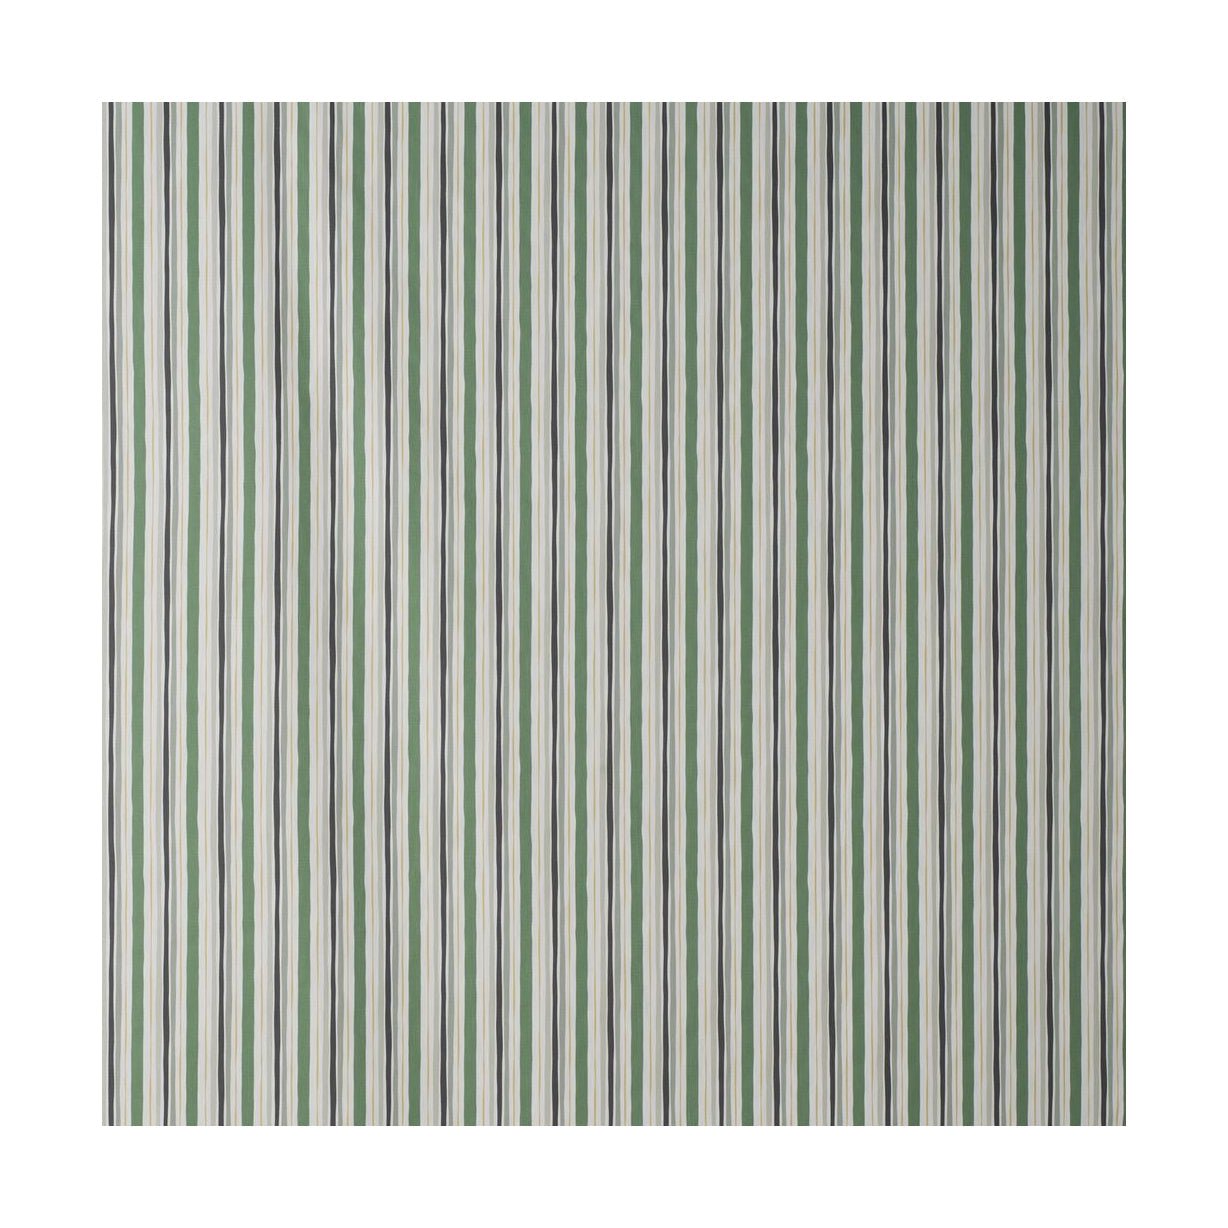 Larghezza del tessuto Spira Randi 150 cm (prezzo per metro), verde